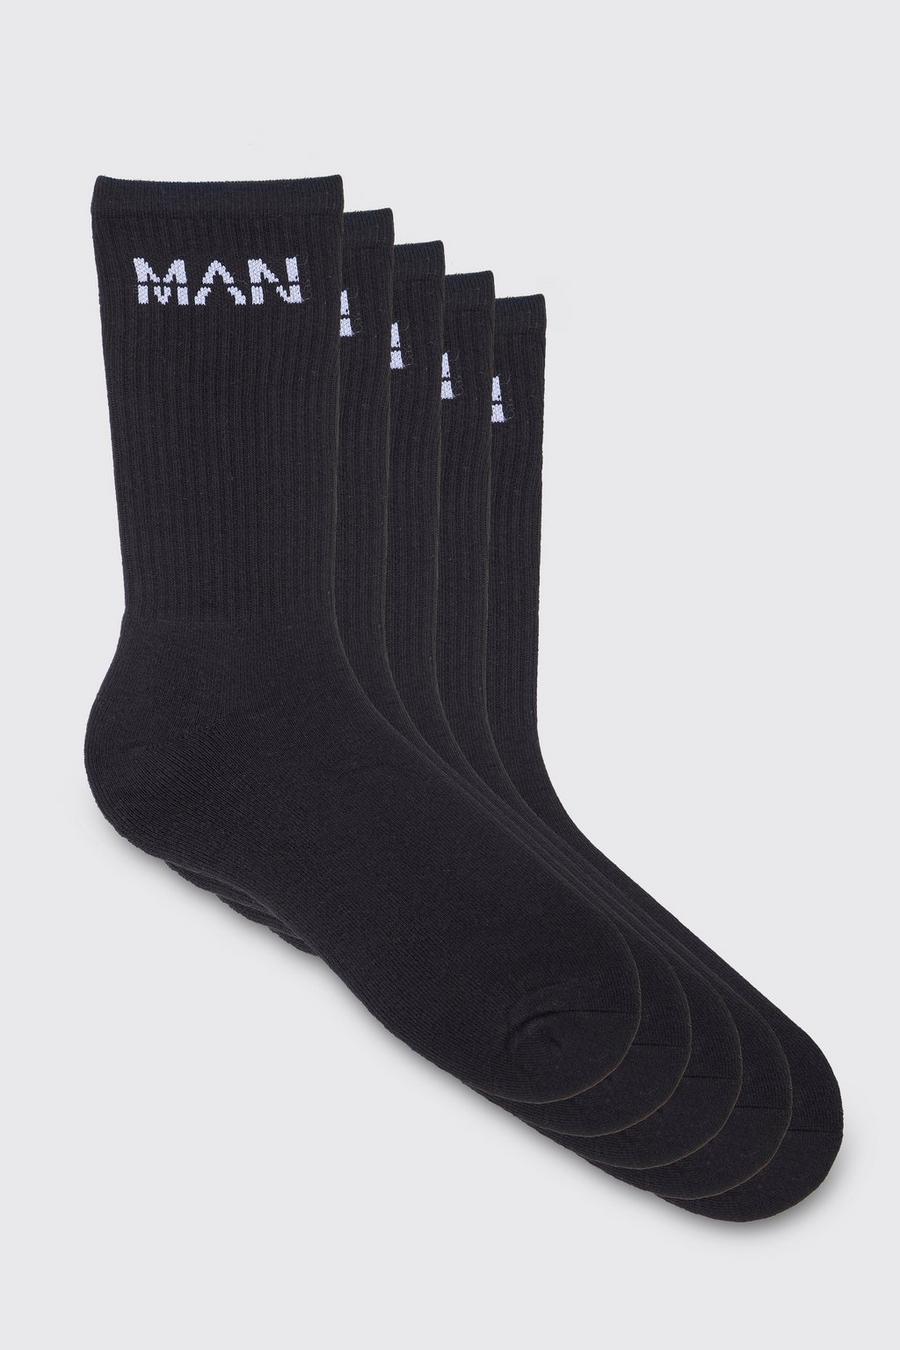 Pack de 5 pares de calcetines MAN deportivos, Black nero